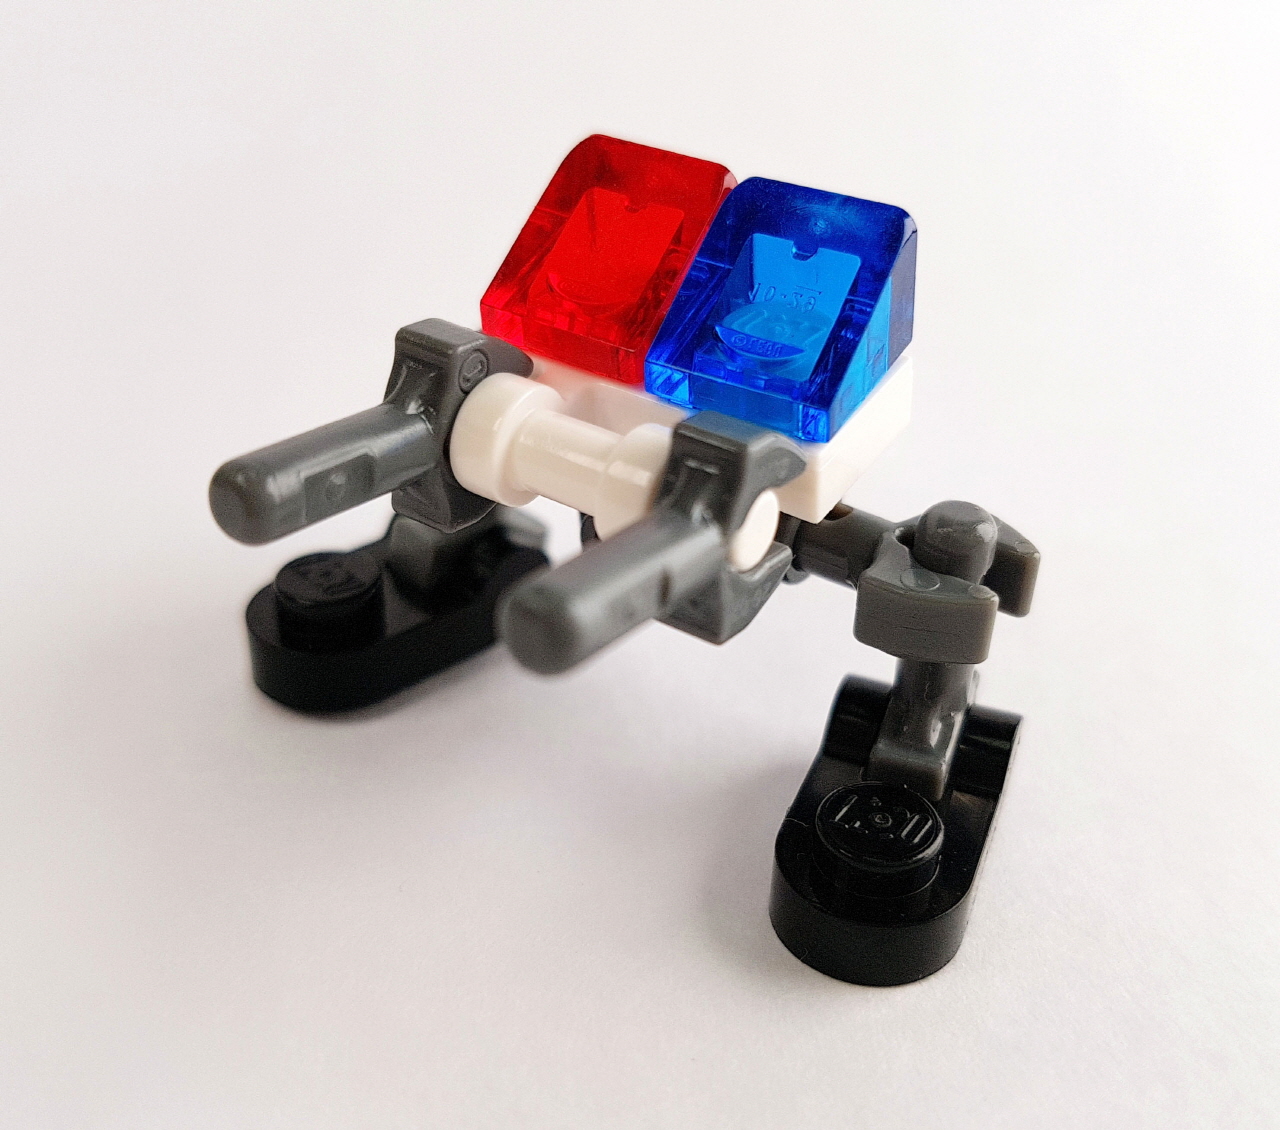 13개 부품으로 만드는 초미니 경찰로봇 - 미니캅 4 - 변신,변신로봇,레고변신로봇